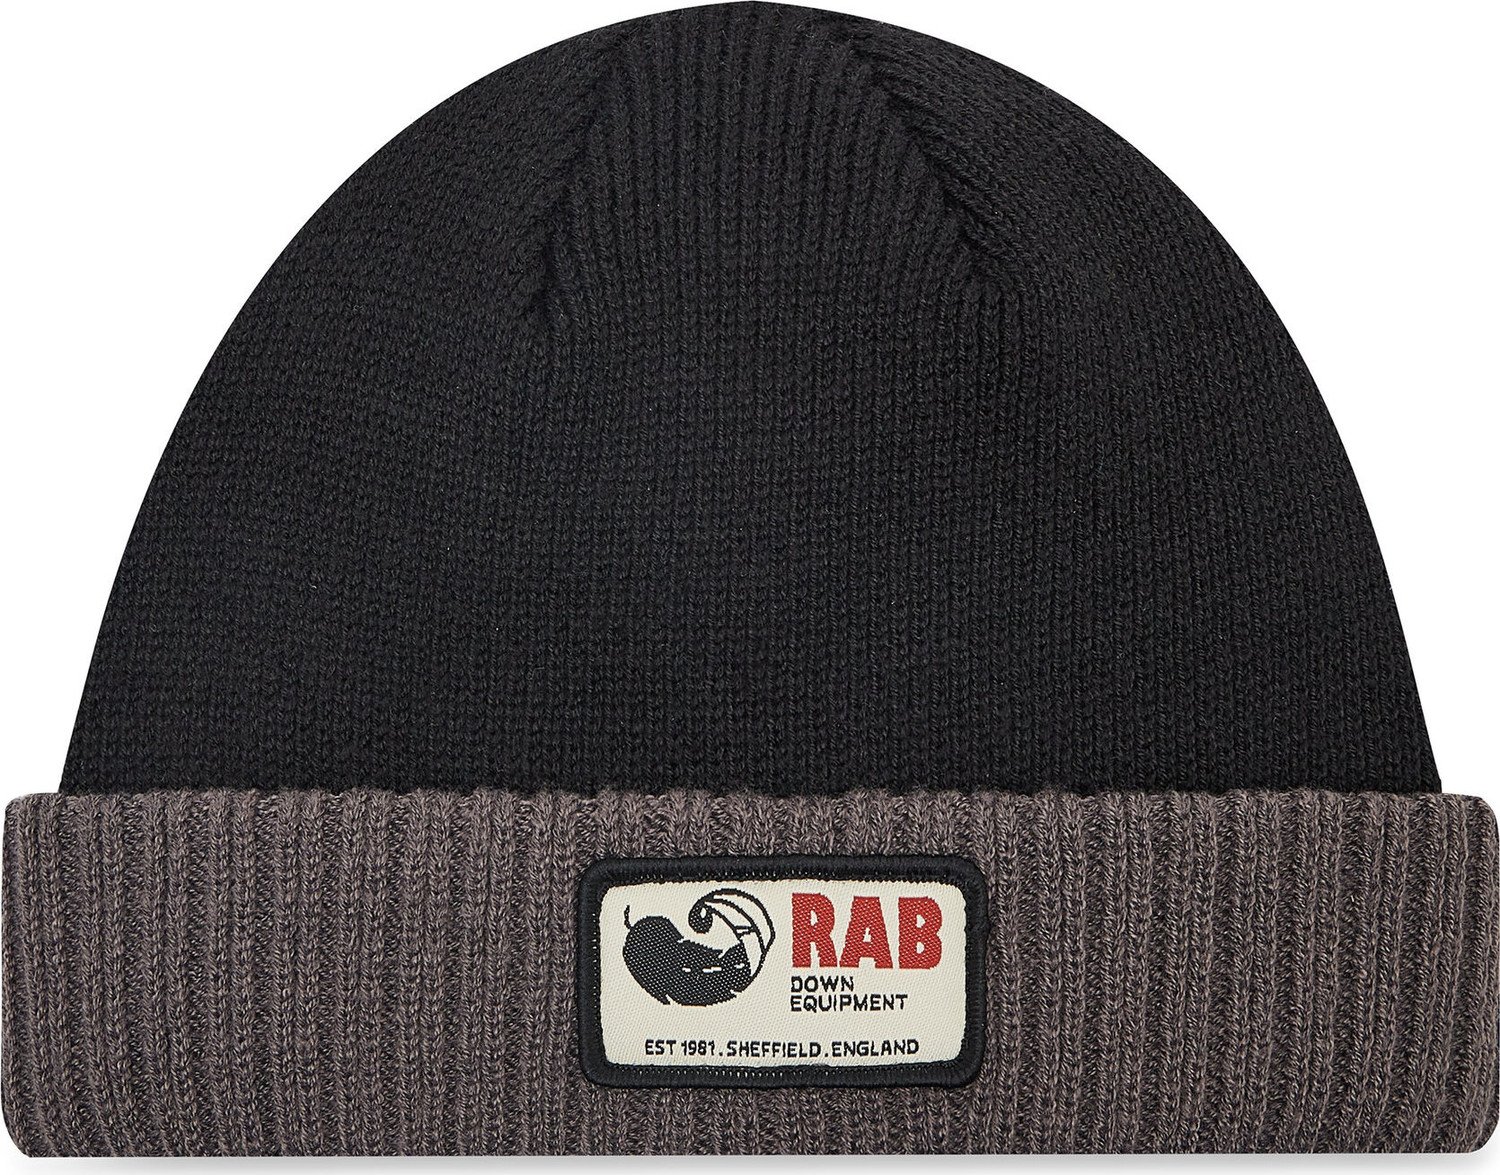 Čepice Rab Essential RAB-QAB-26-BLK-ONE Black